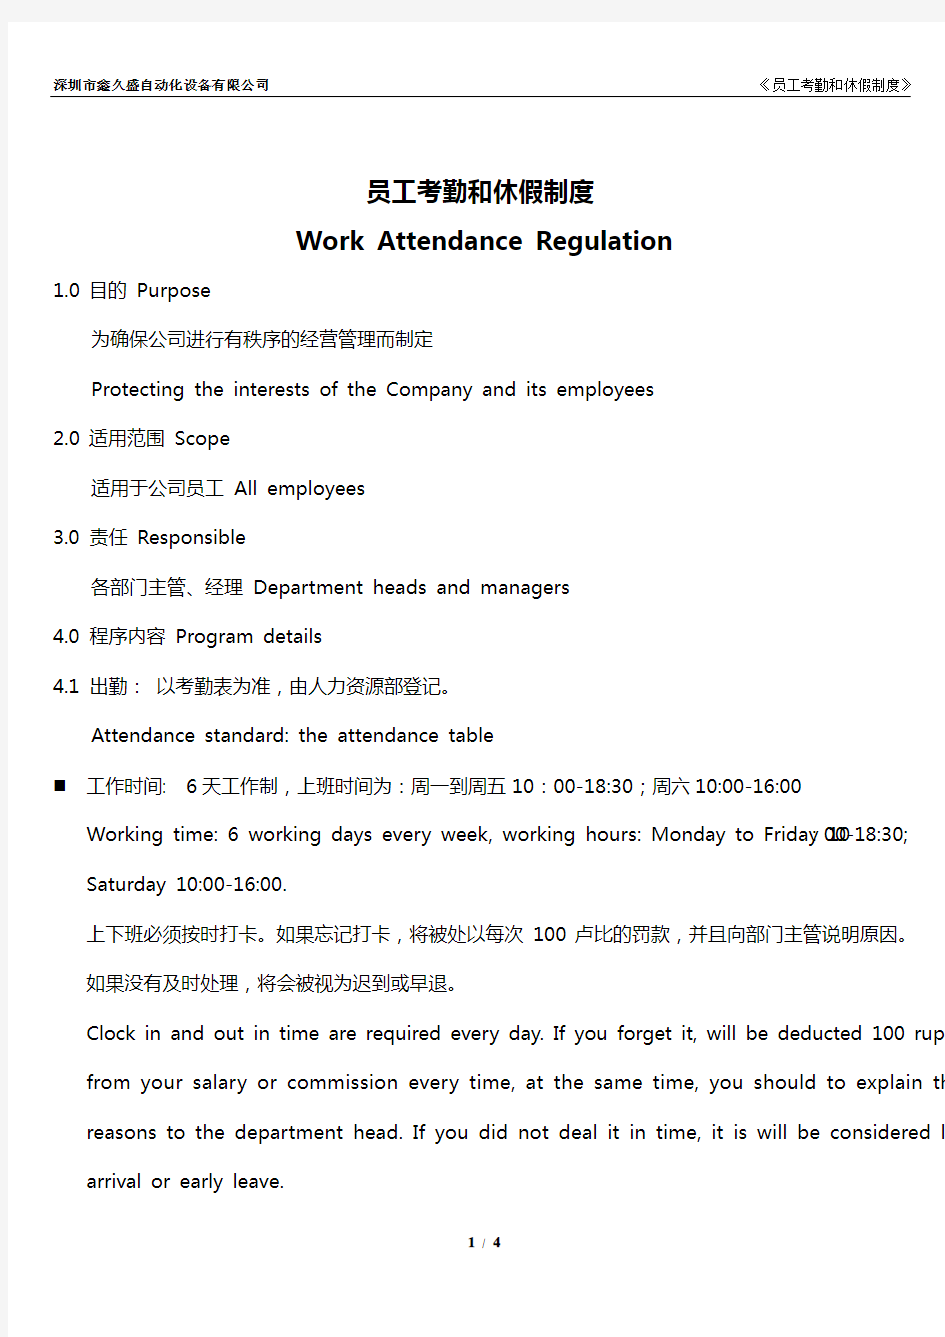 考勤和休假制度中英文Work Attendance Regulation